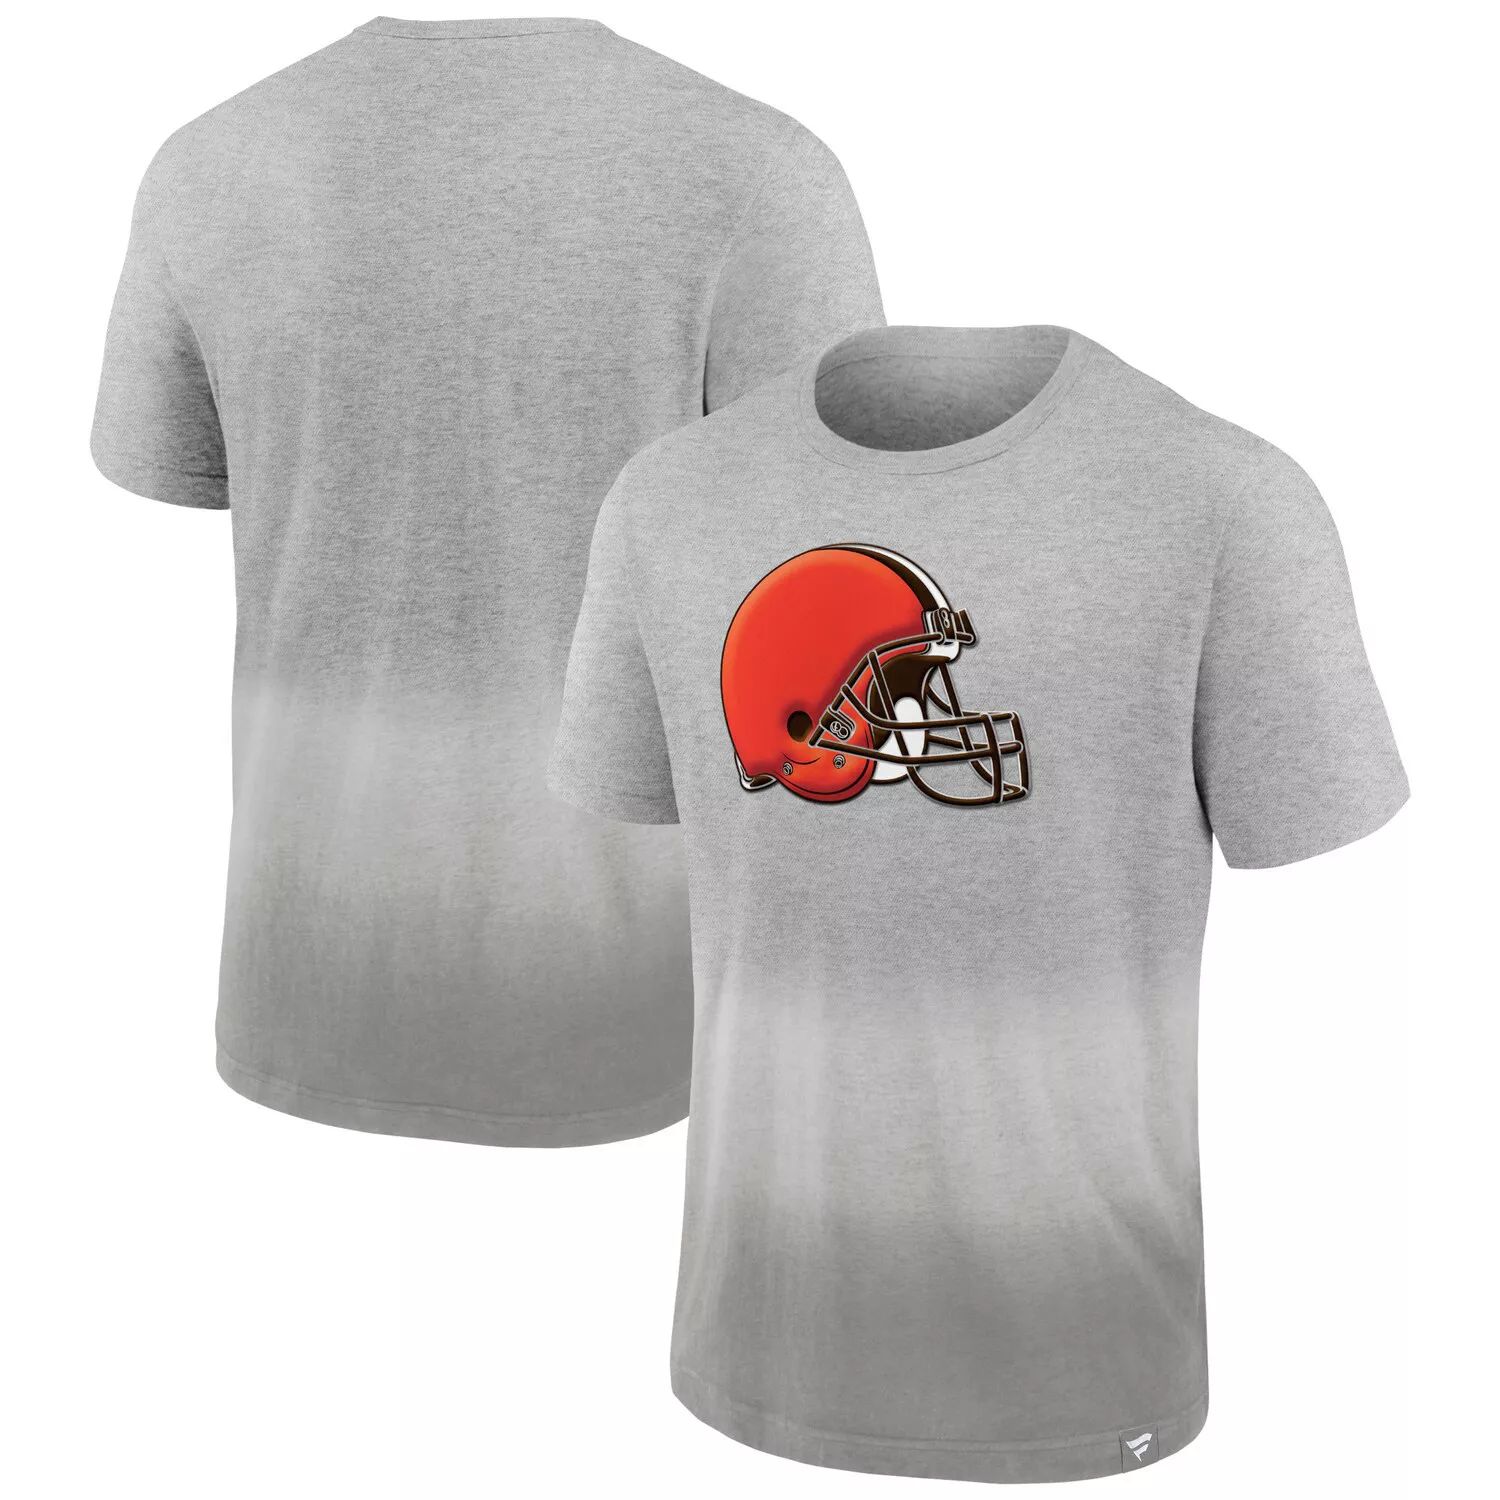 Мужская фирменная футболка серого/серого цвета с эффектом омбре Cleveland Browns Team Fanatics